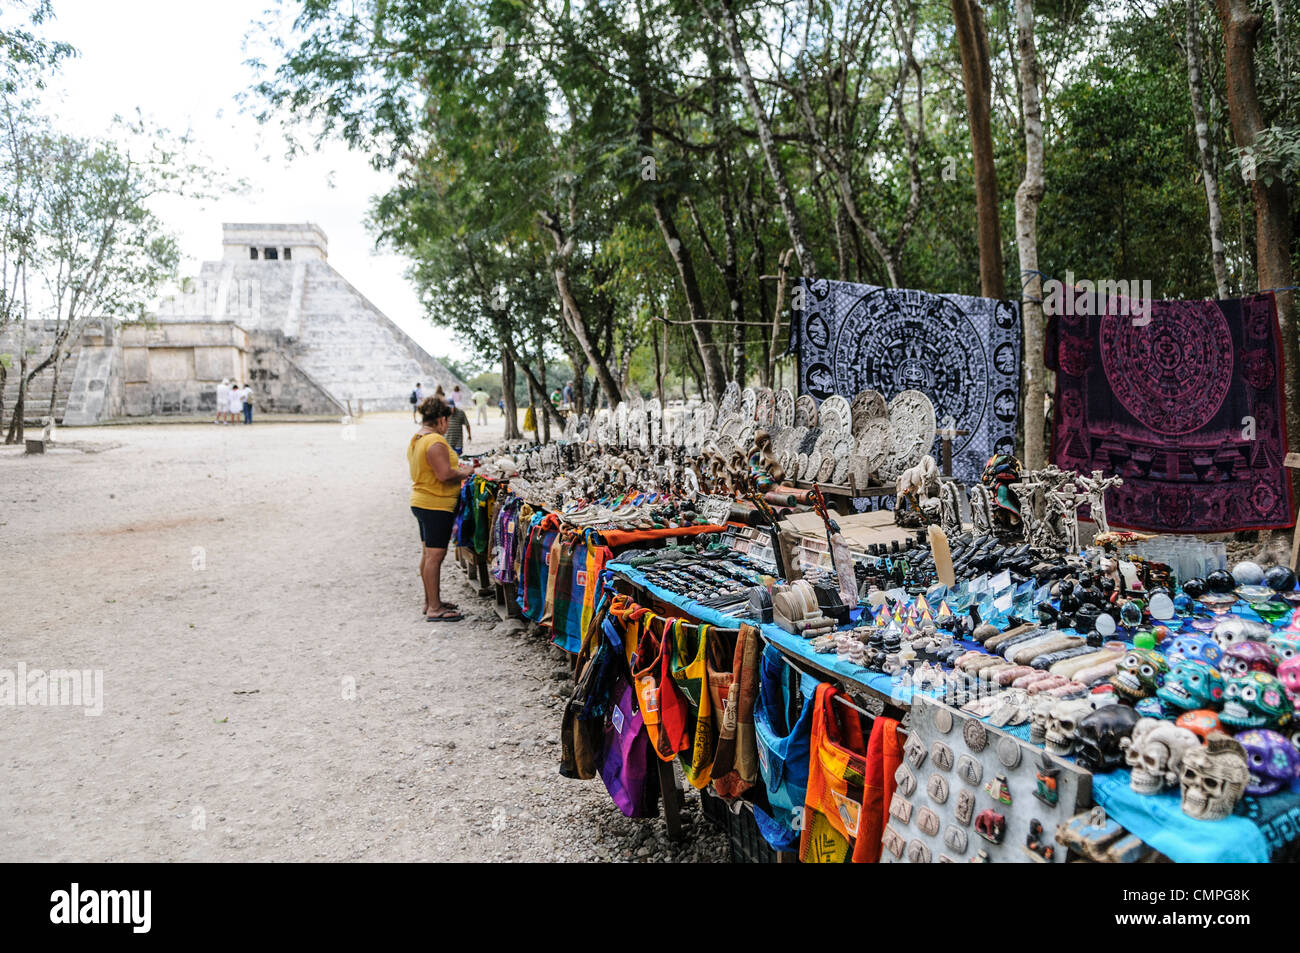 CHICHEN ITZA, Mexique - les étals de marché vendant des souvenirs locaux et de l'artisanat aux touristes visitant les ruines mayas de Chichen Itza site archéologique au Mexique. El Castilla se trouve dans l'arrière-plan. Banque D'Images